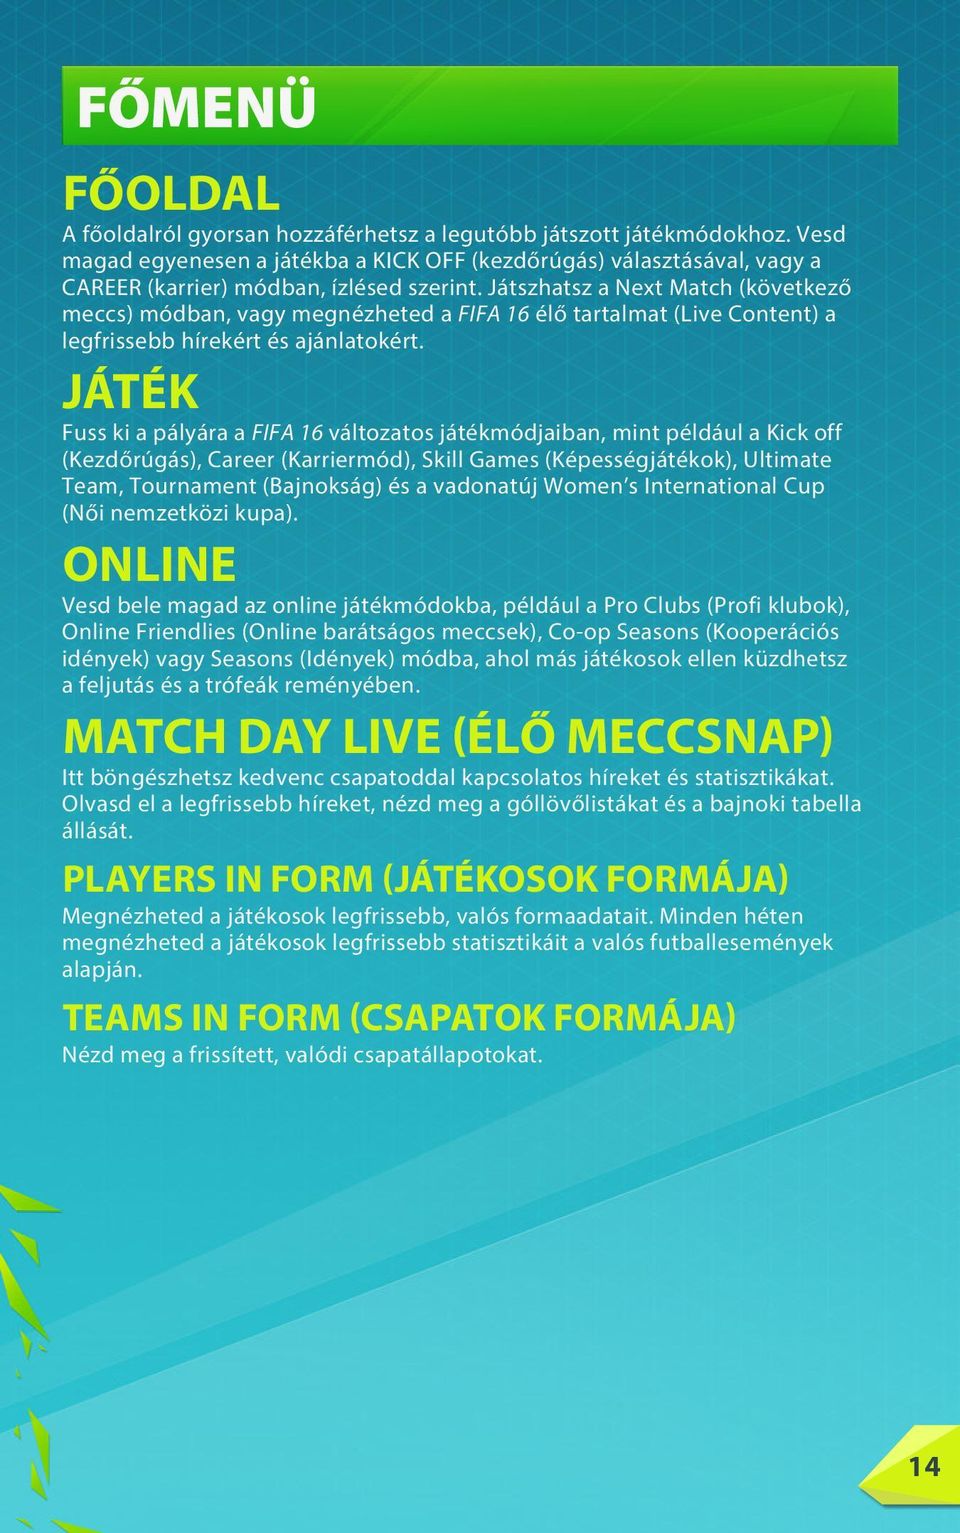 Játszhatsz a Next Match (következő meccs) módban, vagy megnézheted a FIFA 16 élő tartalmat (Live Content) a legfrissebb hírekért és ajánlatokért.